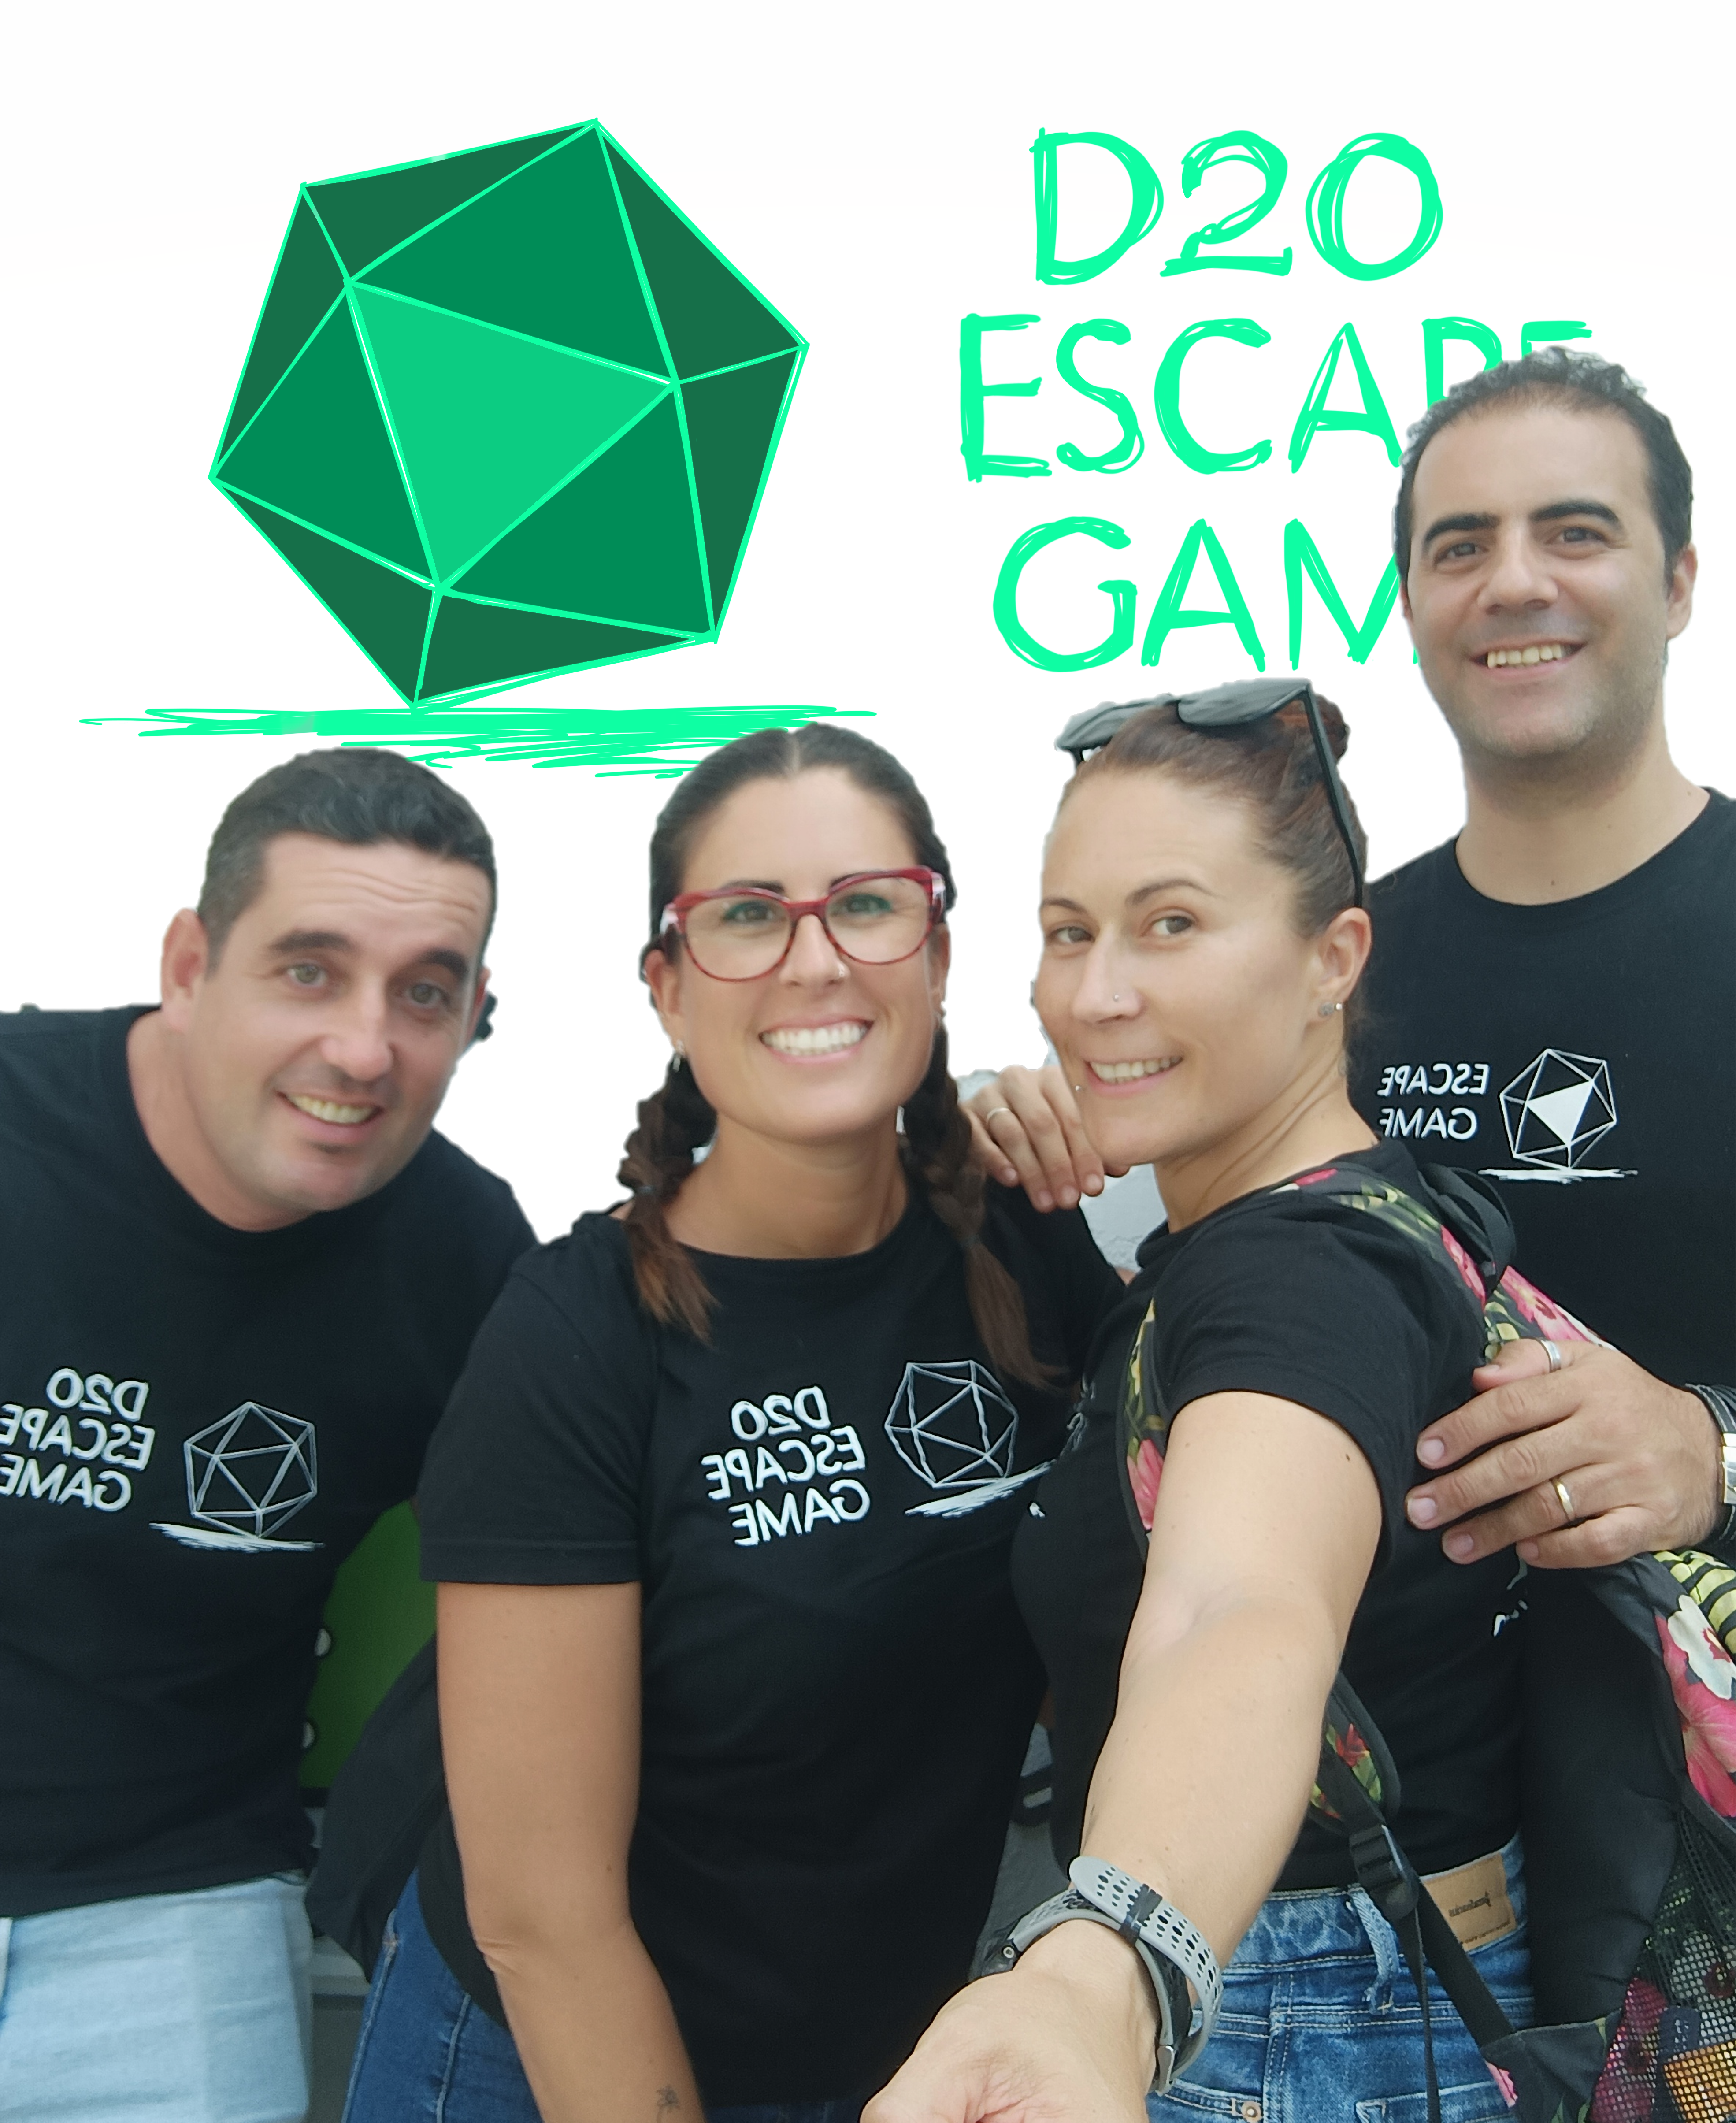 Equipo de D20 Escape Game con nuestro logo sobre fondo blanco